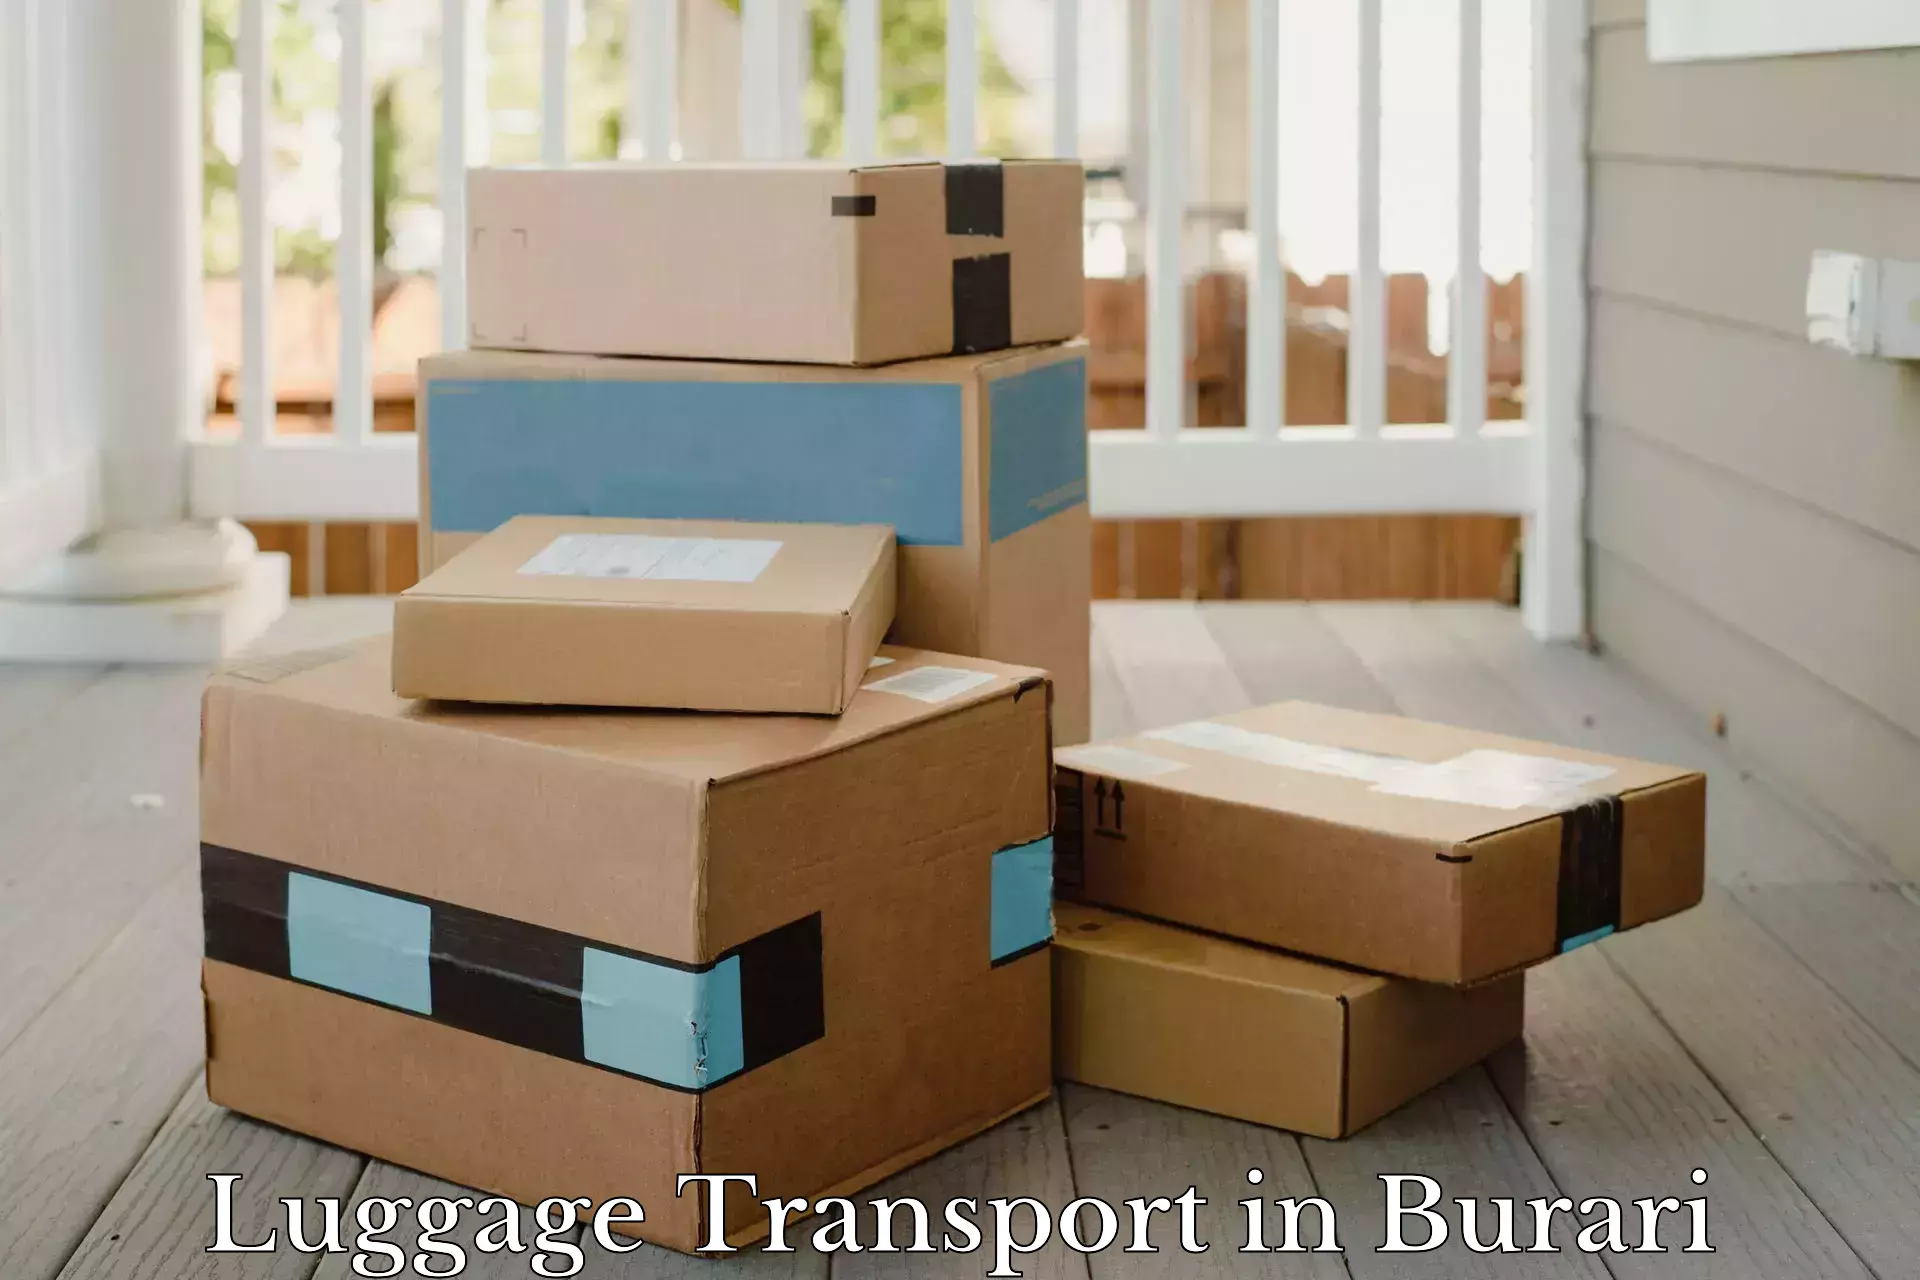 Baggage transport management in Burari